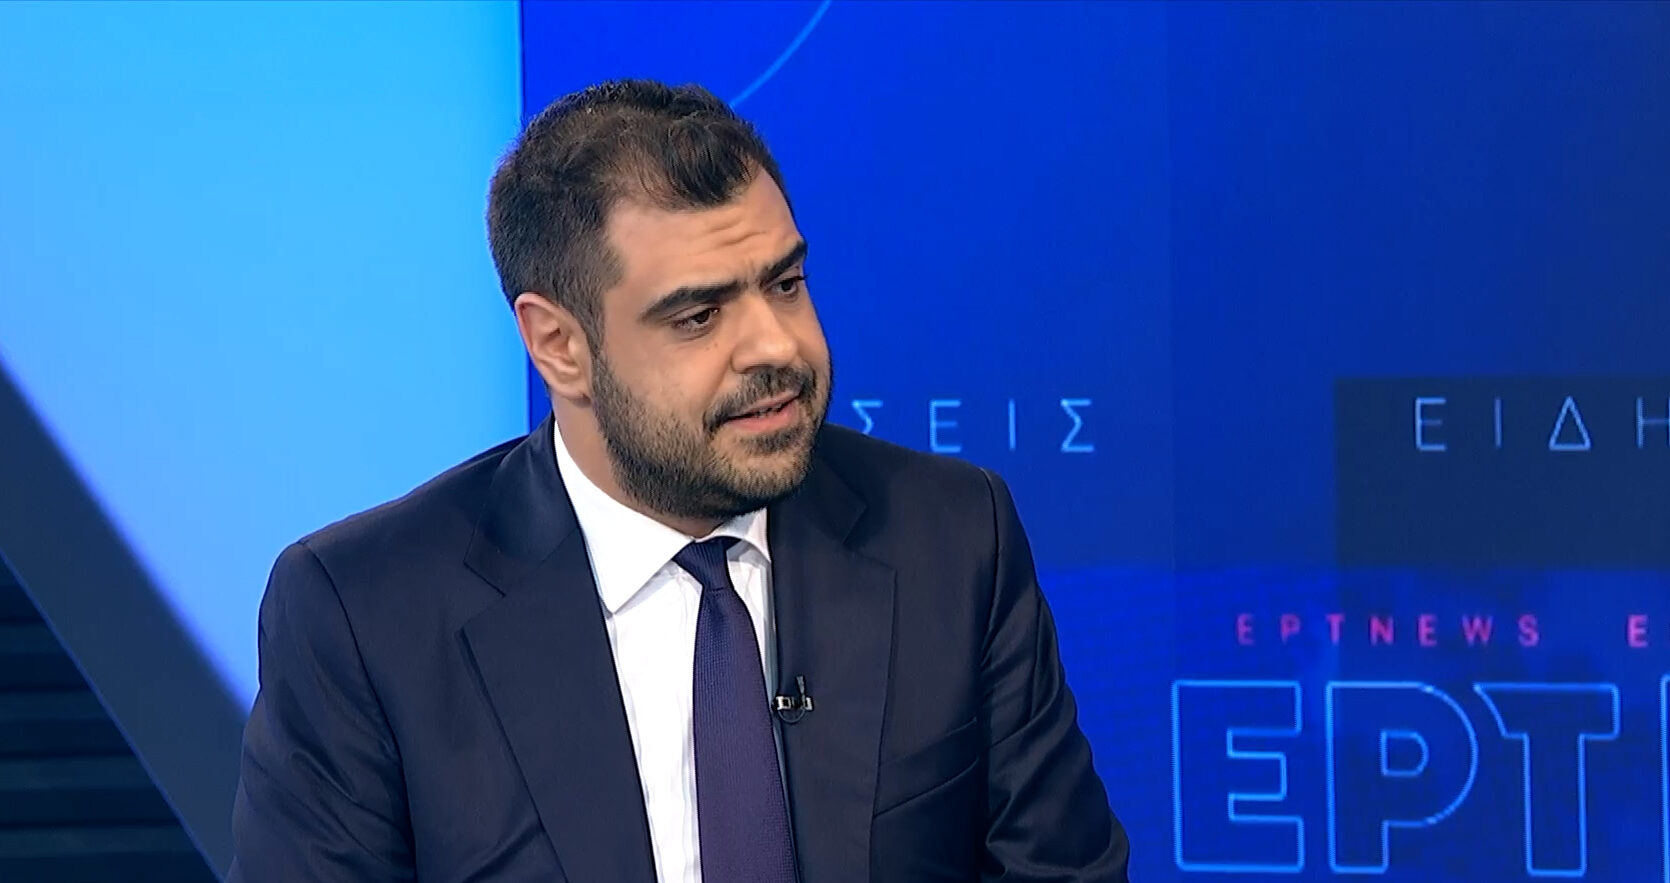 Π. Μαρινάκης στο ΕΡΤNews: Θα ήταν λάθος αν λέγαμε ότι θα εξαφανίσουμε φαινόμενα ενδοοικογενειακής βίας – Τι είπε για Σπαρτιάτες